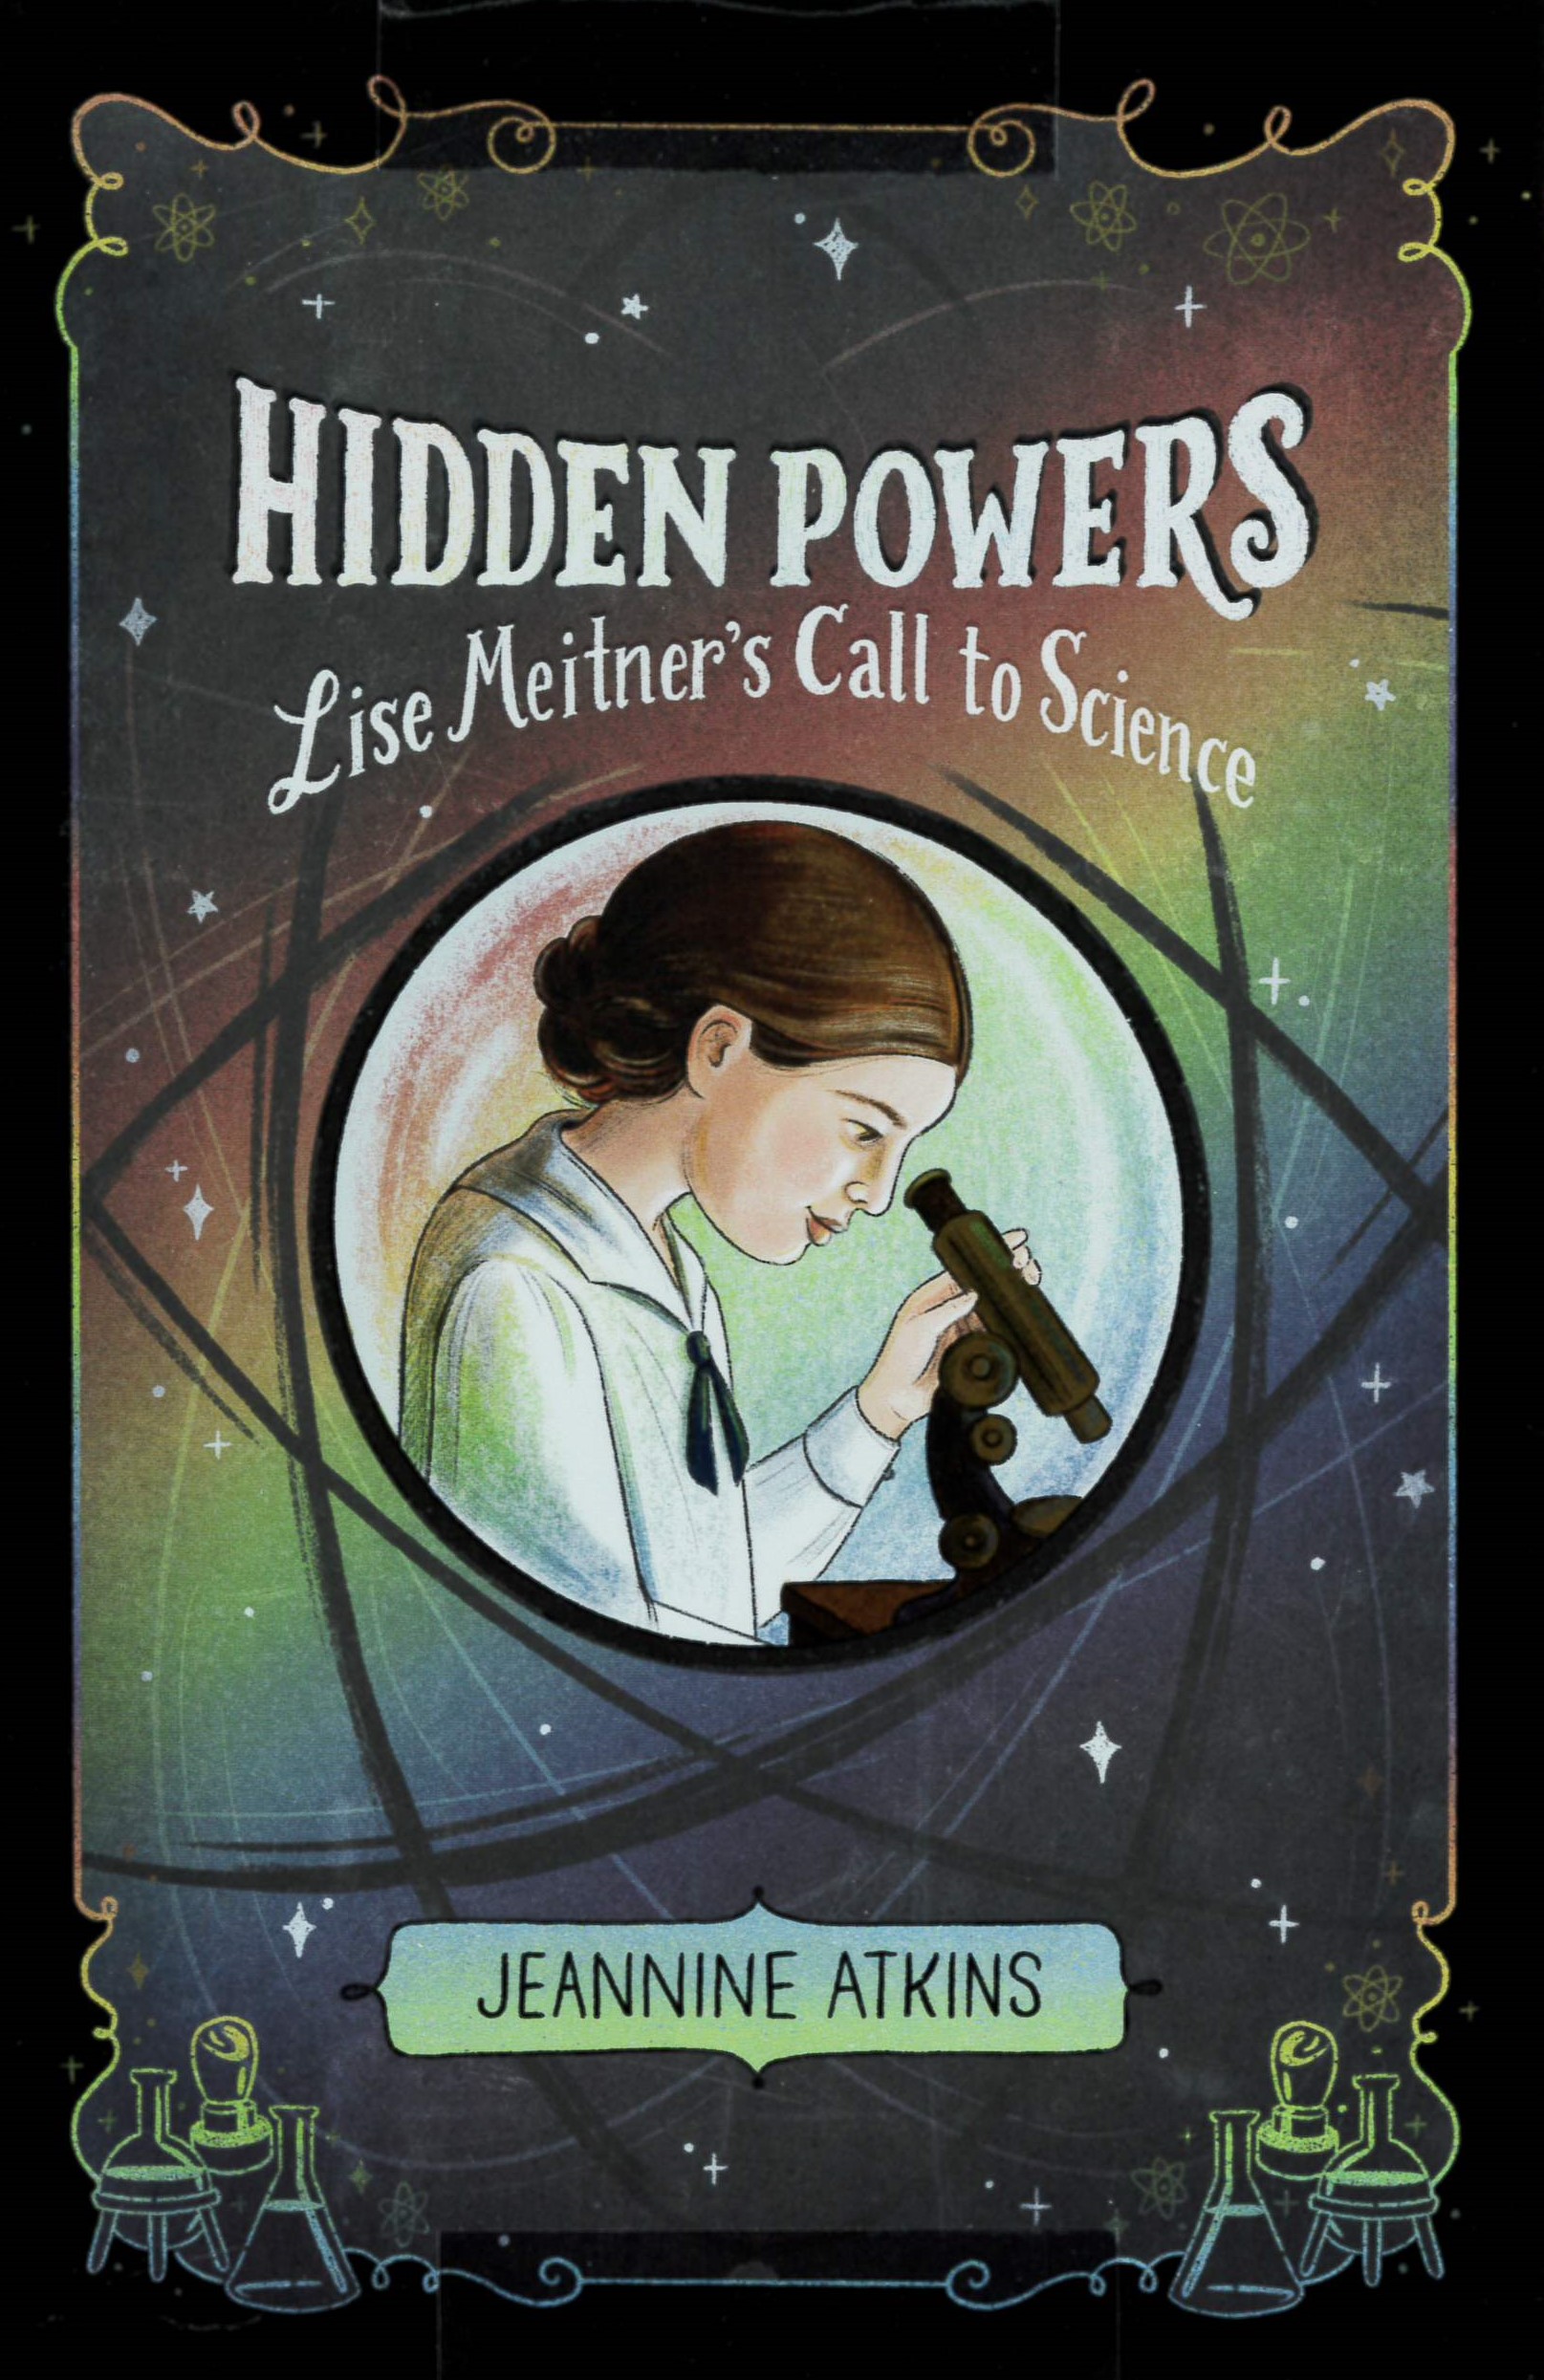 Hidden powers : Lise Meitner